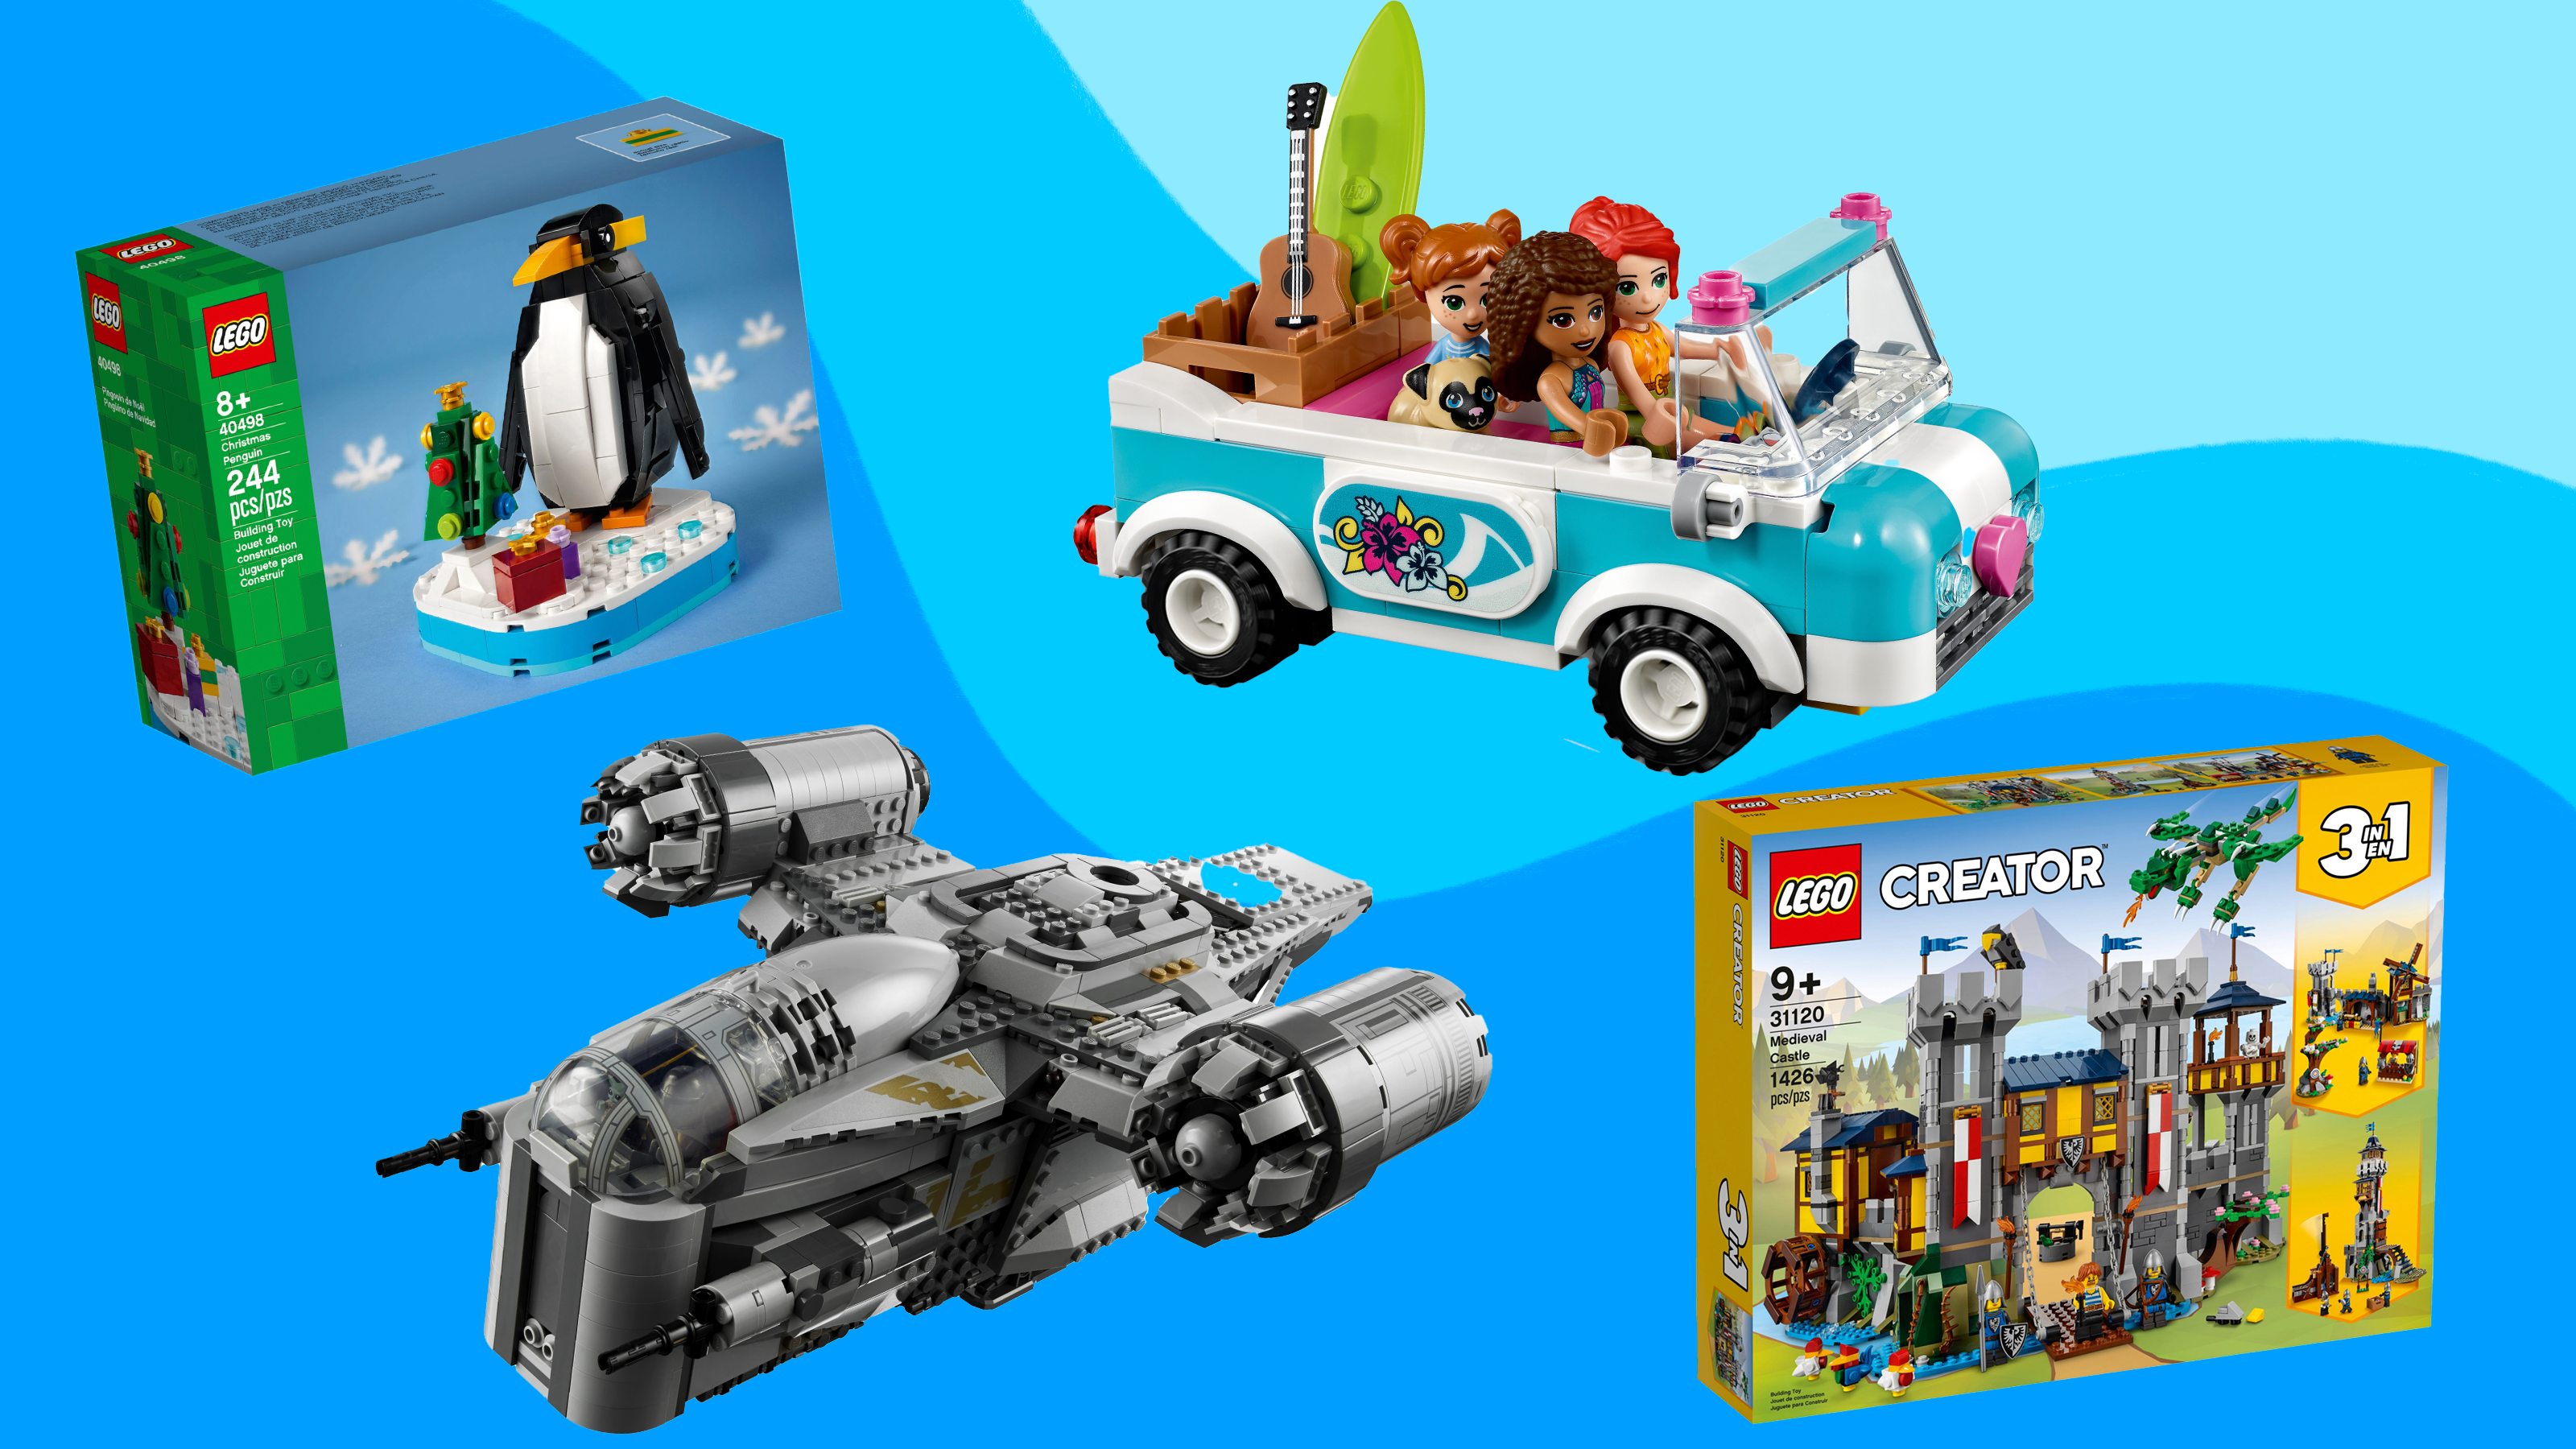 afgår R jul Best Lego sets for kids: Star Wars, Mario, Harry Potter